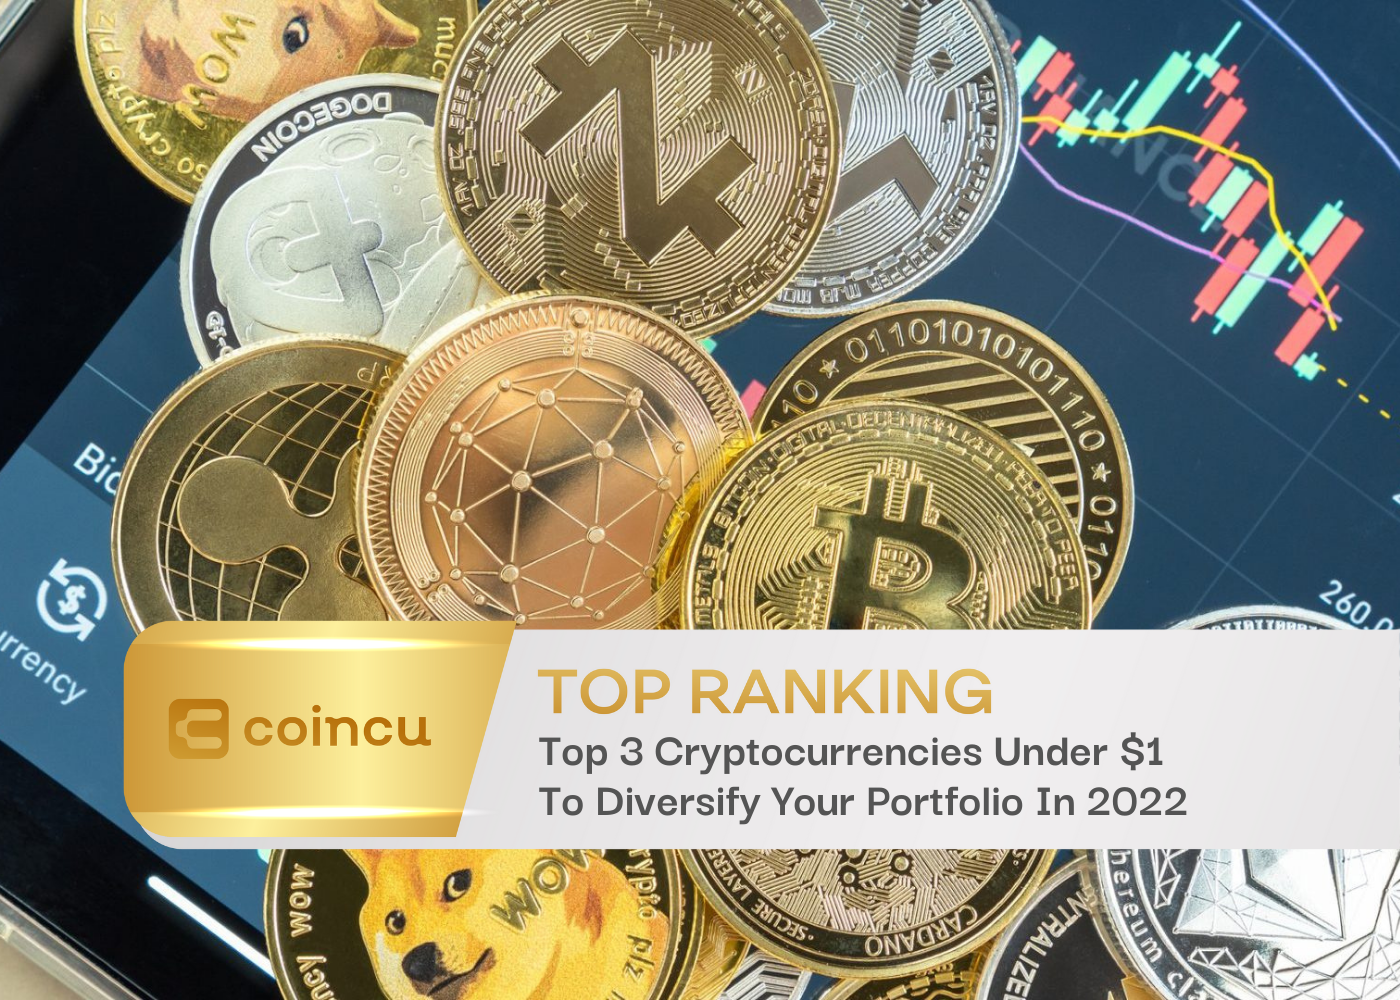 Top 3 Cryptocurrencies Under 1